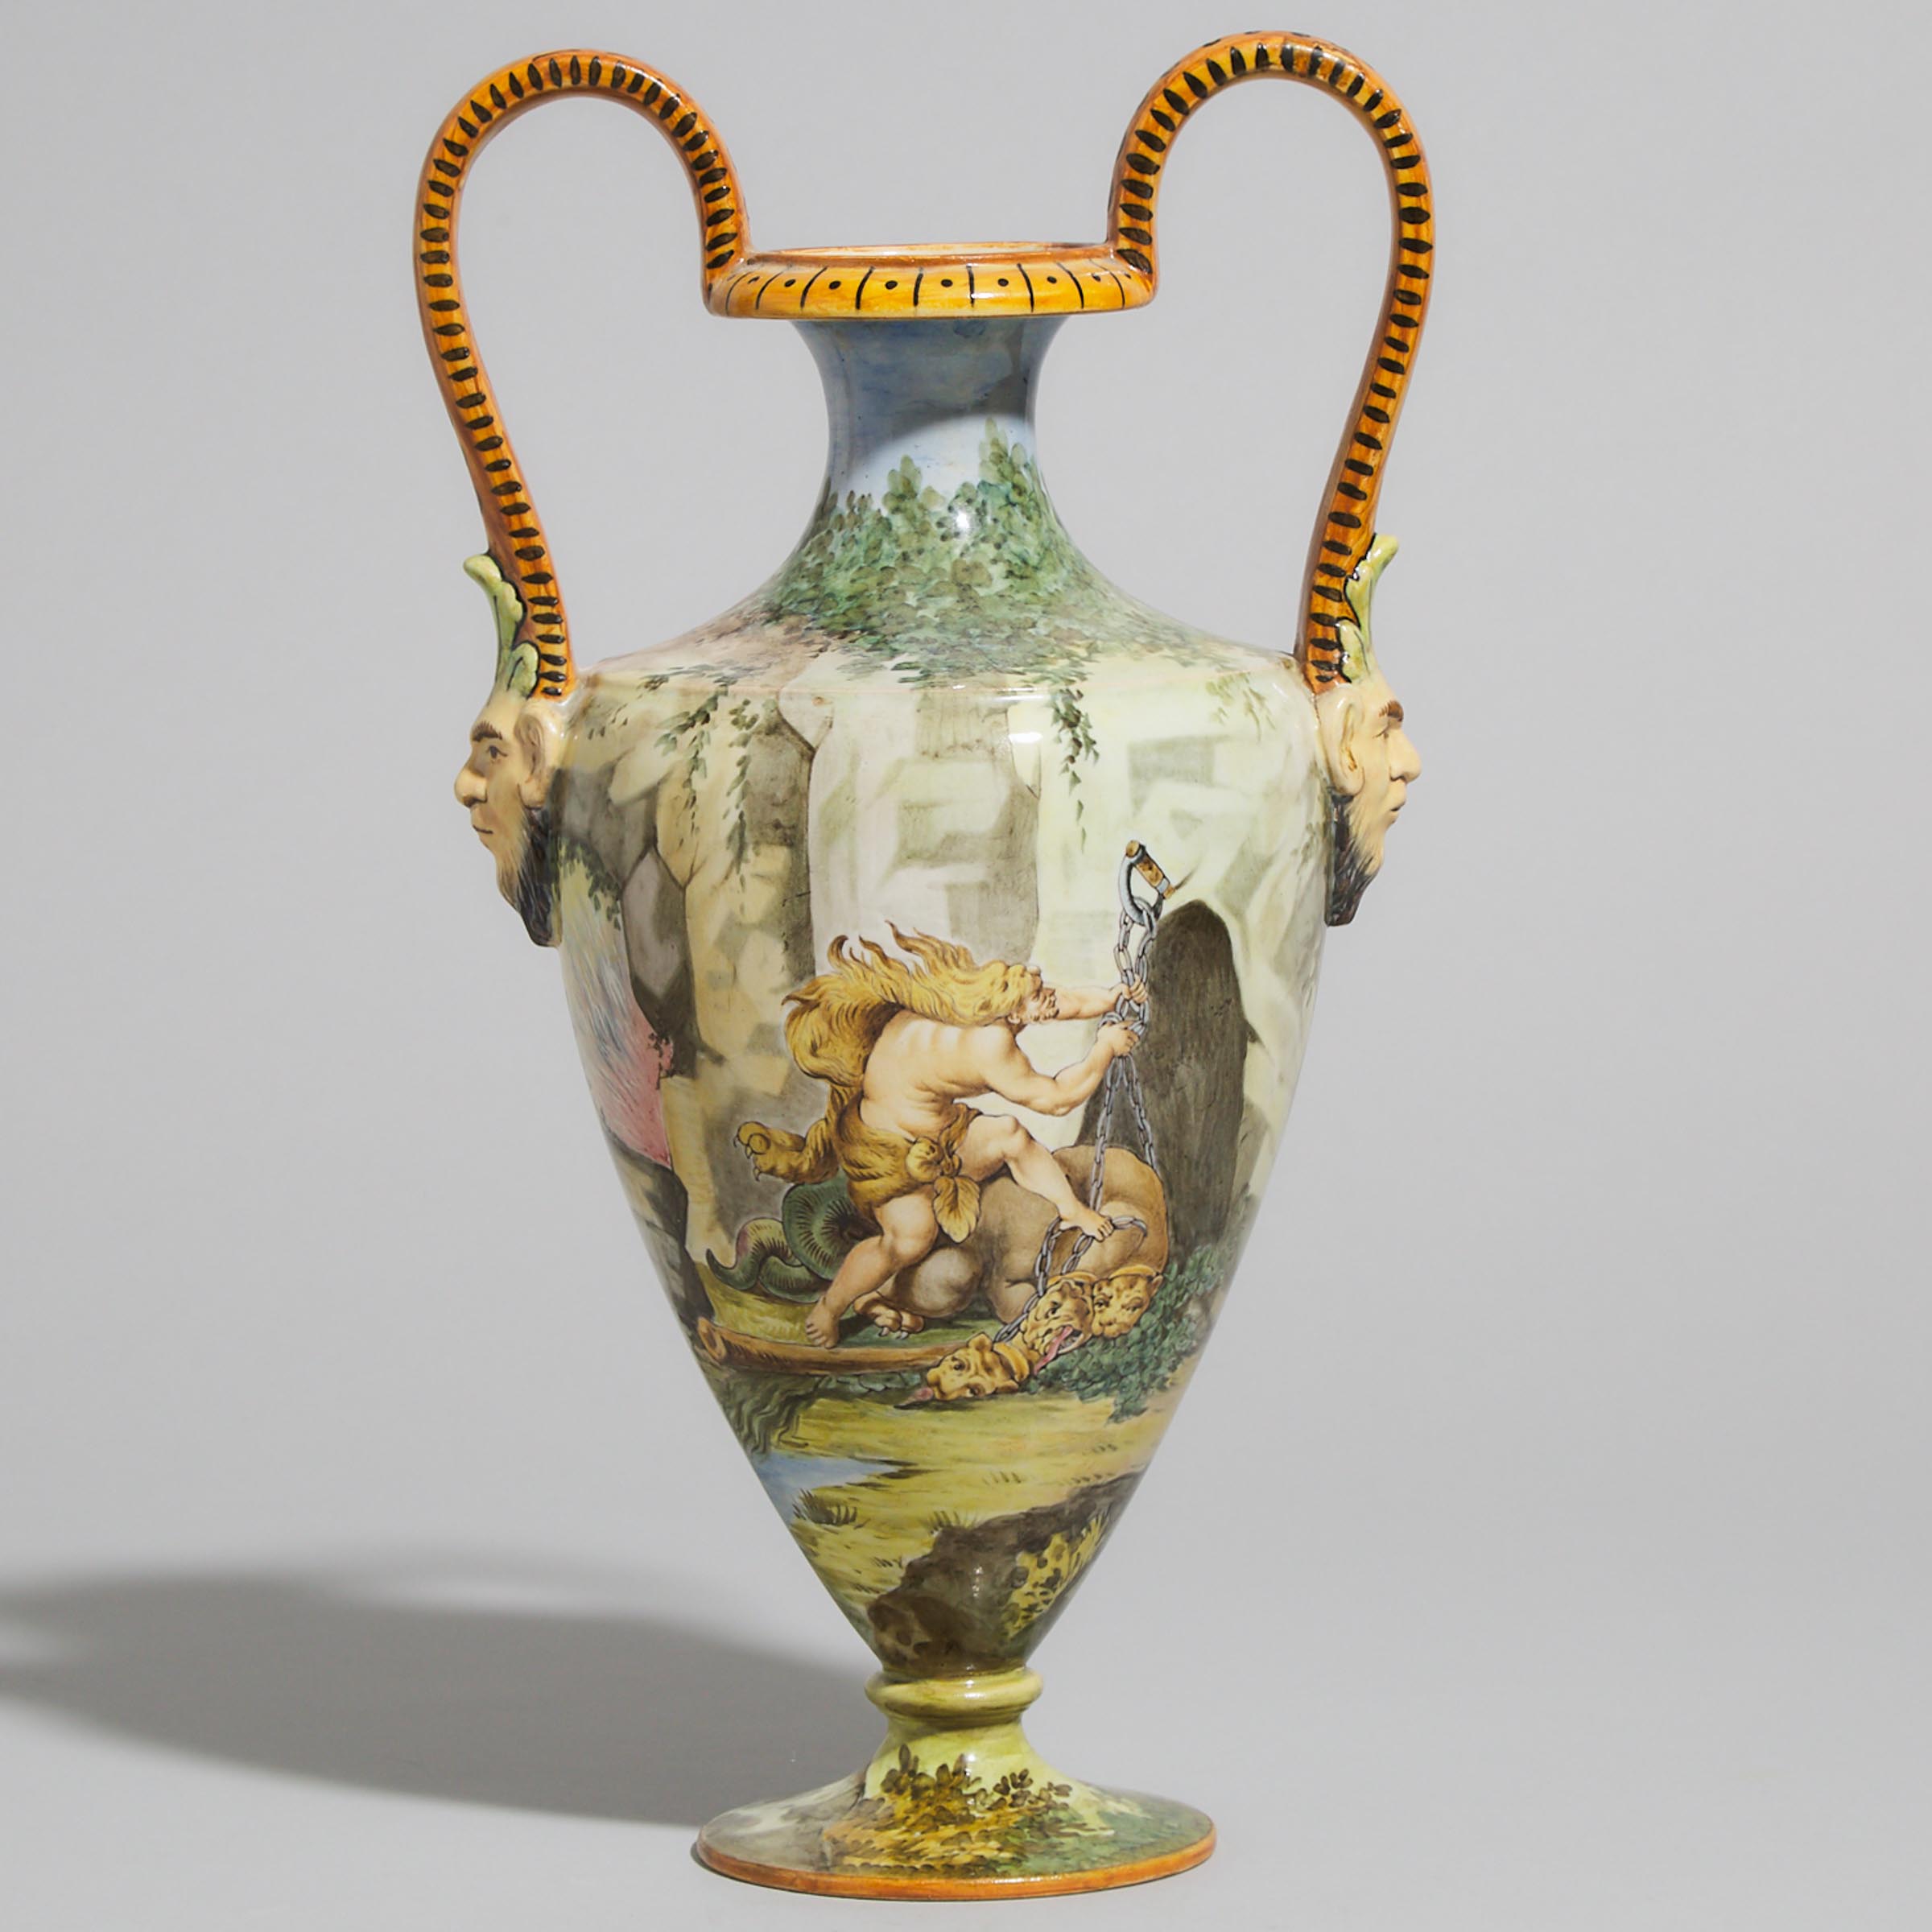 Ginori 'Hercules Chaining Cerberus' Two-Handled Vase, early 20th century